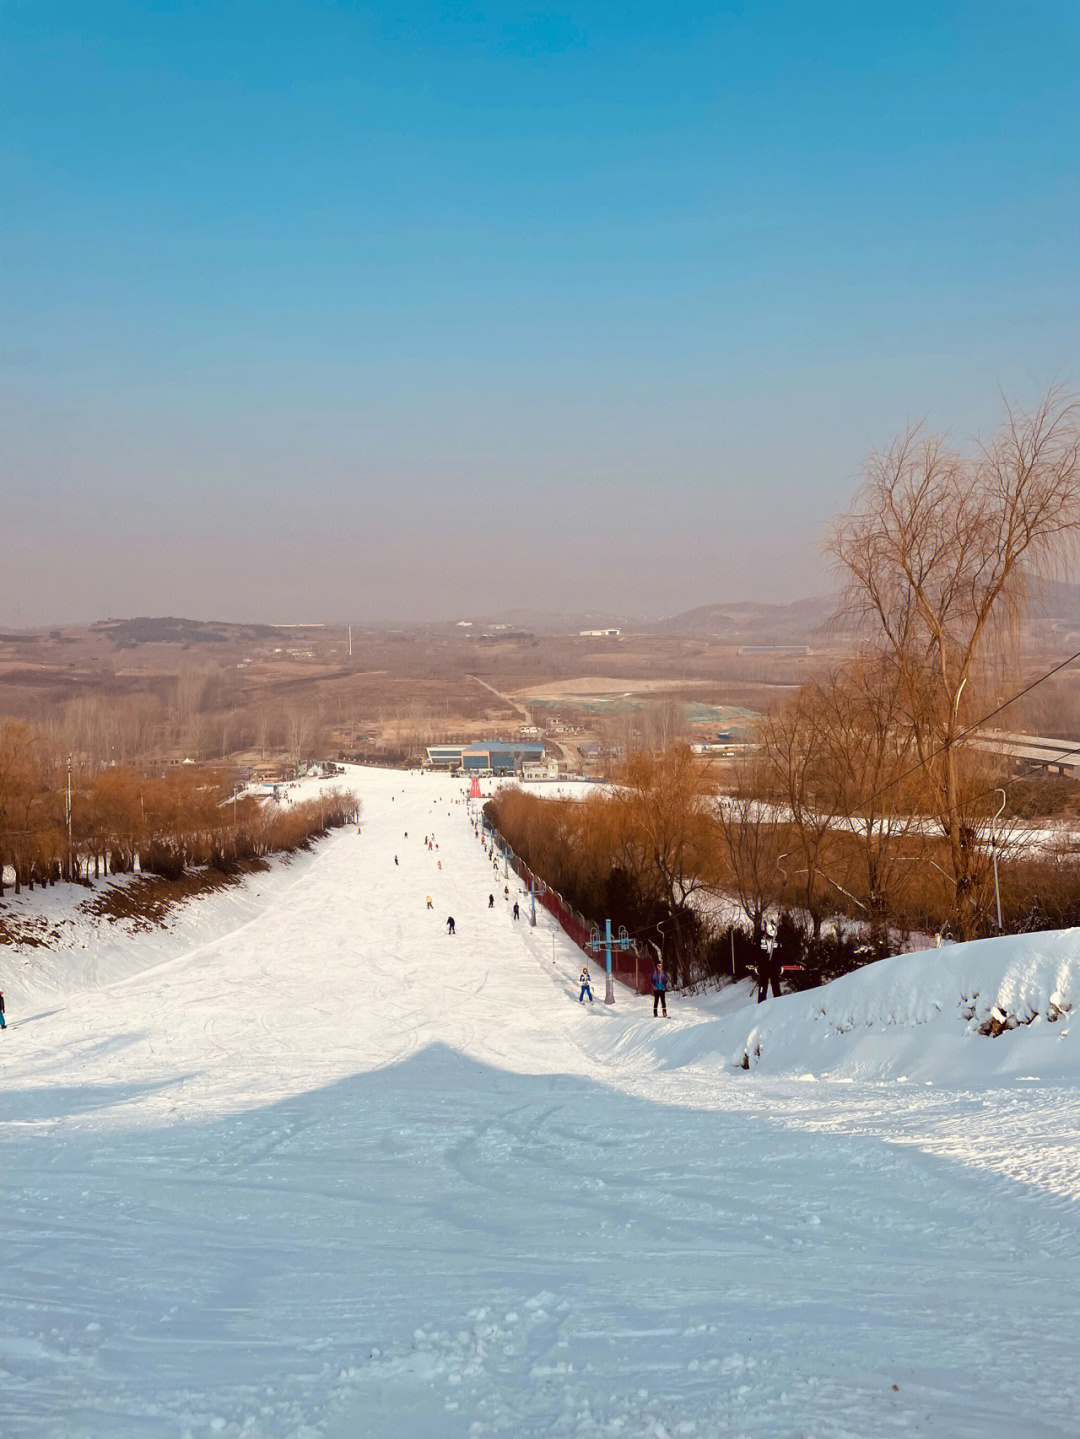 紫竹院滑雪场图片